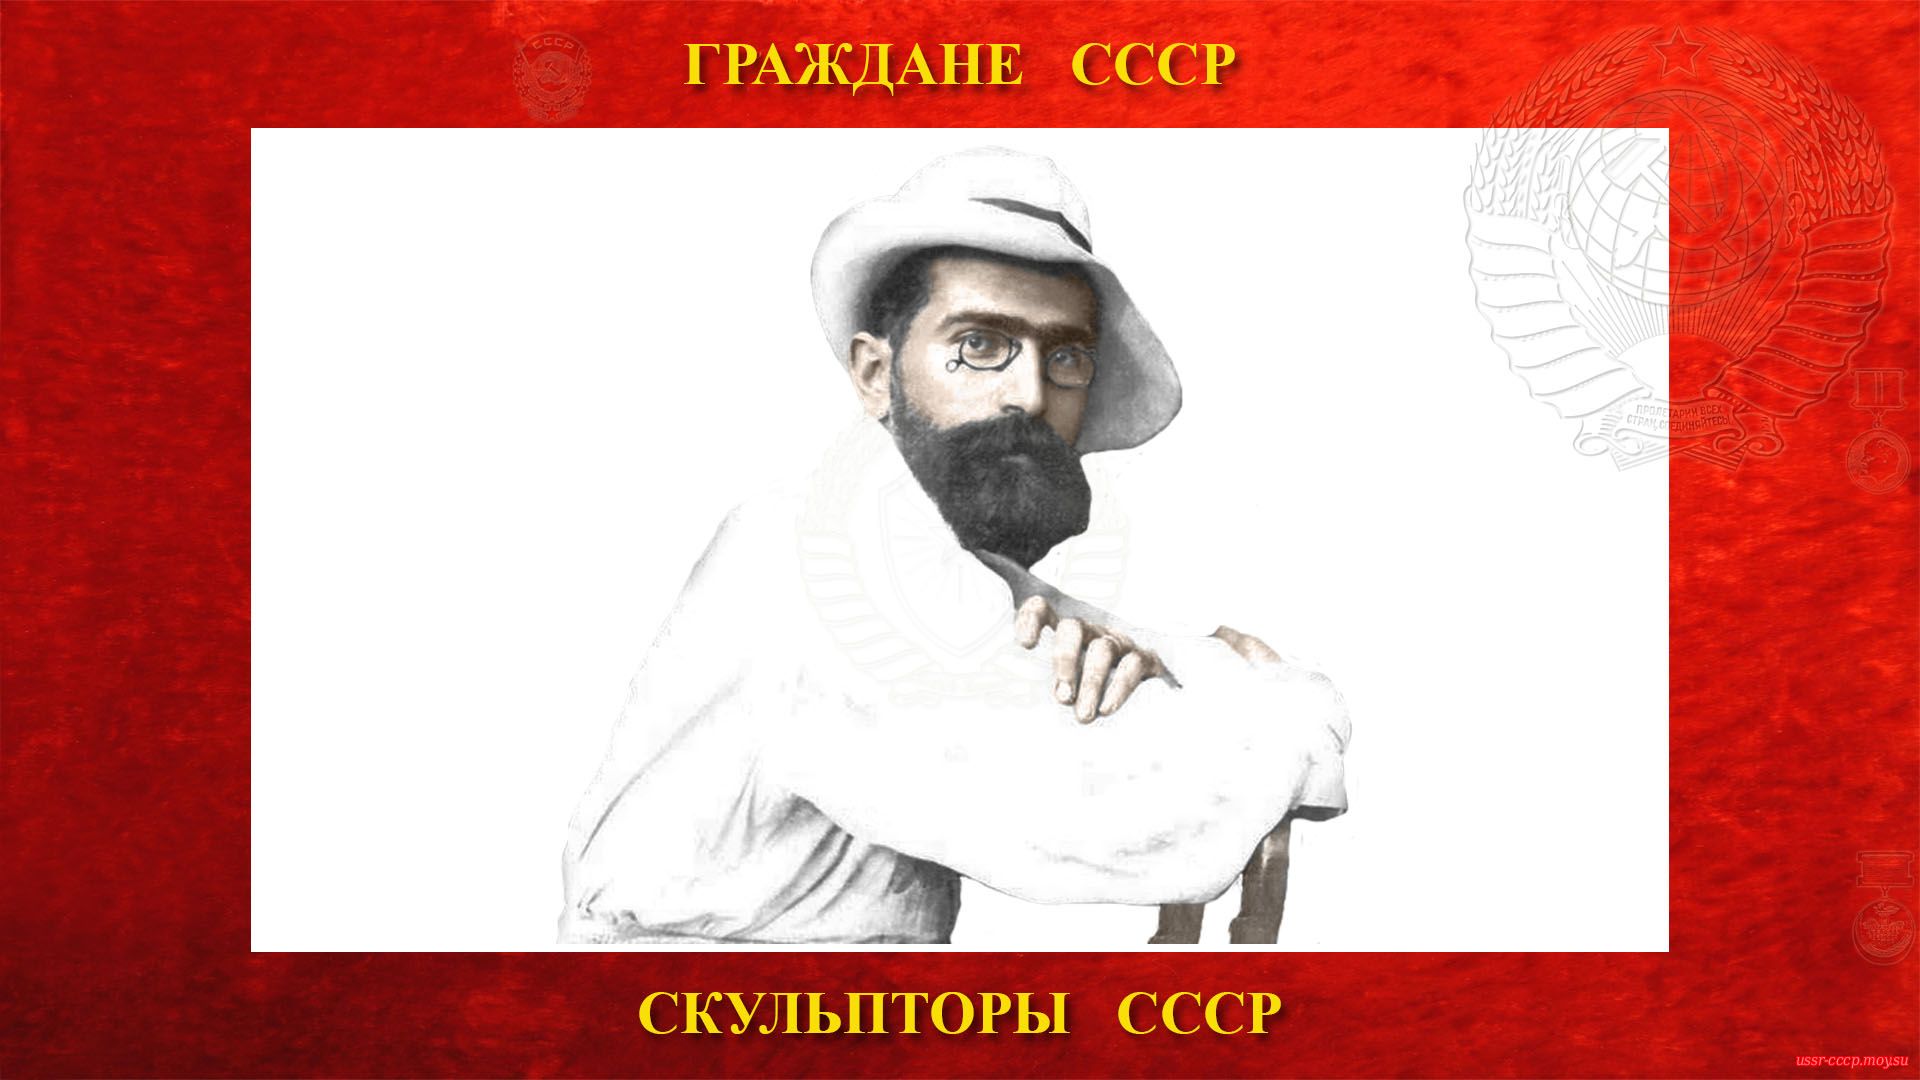 Меркуров Сергей Дмитриевич — Советский скульптор-монументалист (Ялта 1908 год).